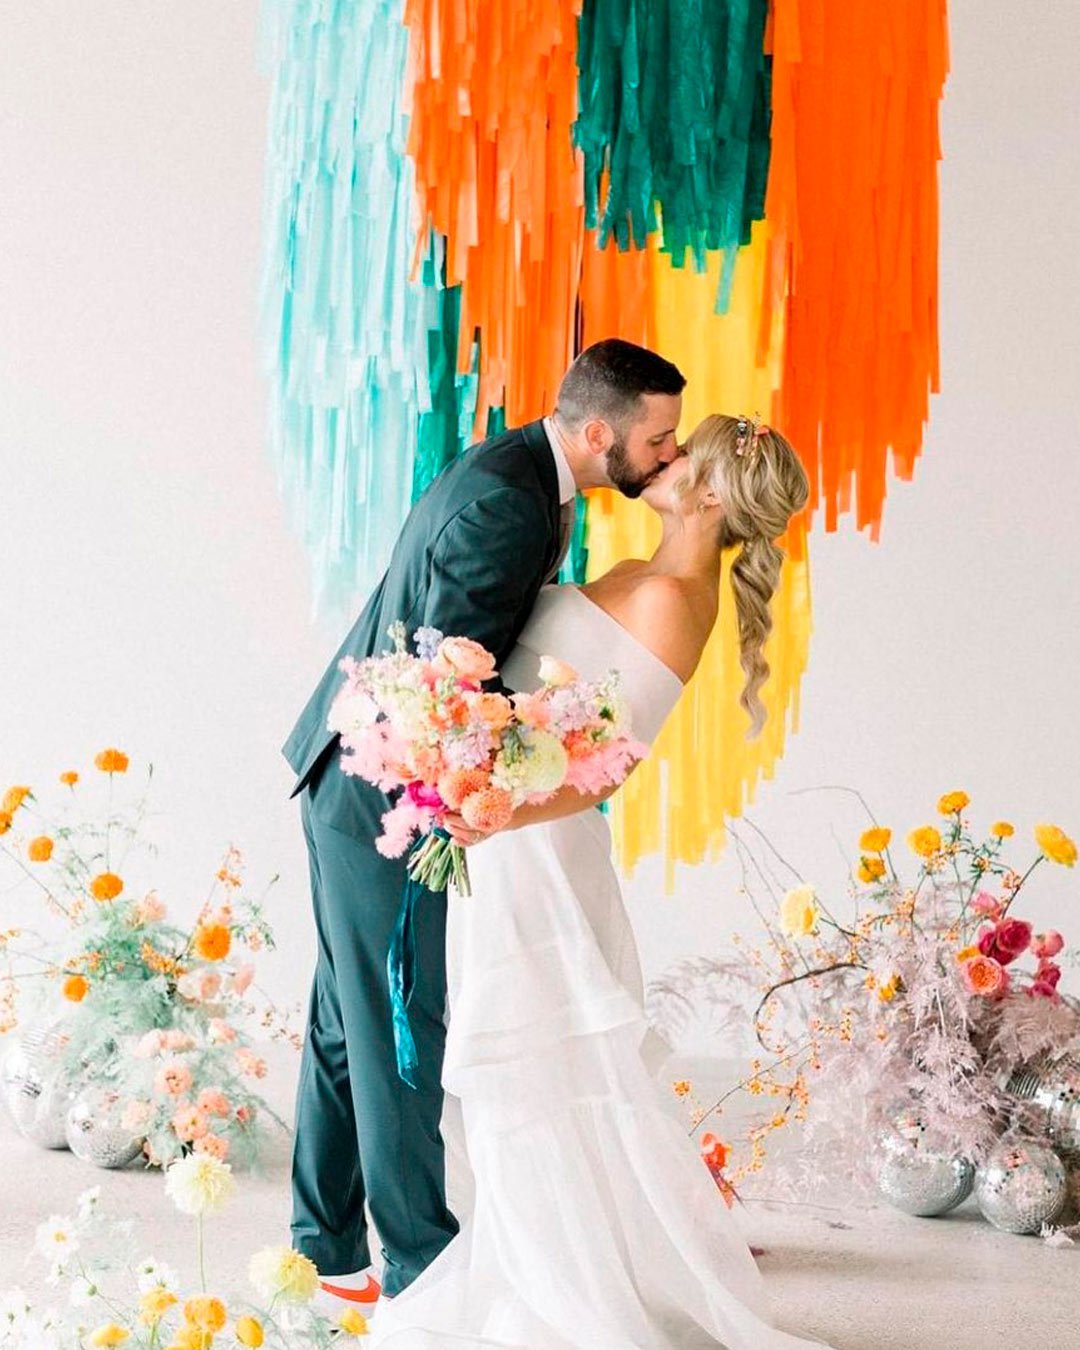 wedding trends bright colors bride groom